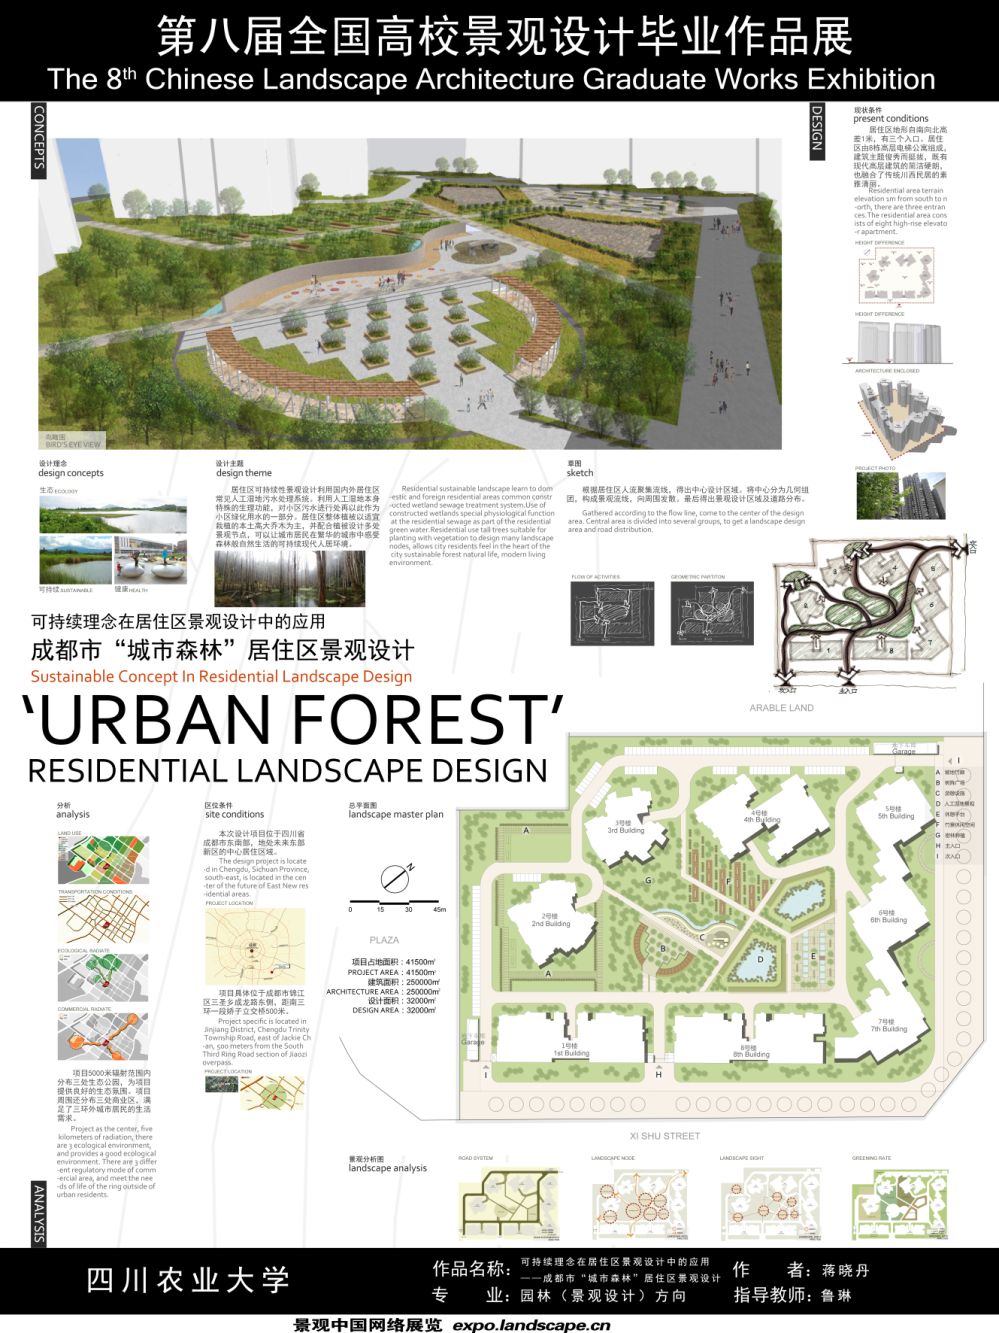 可持续理念在居住区景观设计中的应用 ——成都“城市森...-1